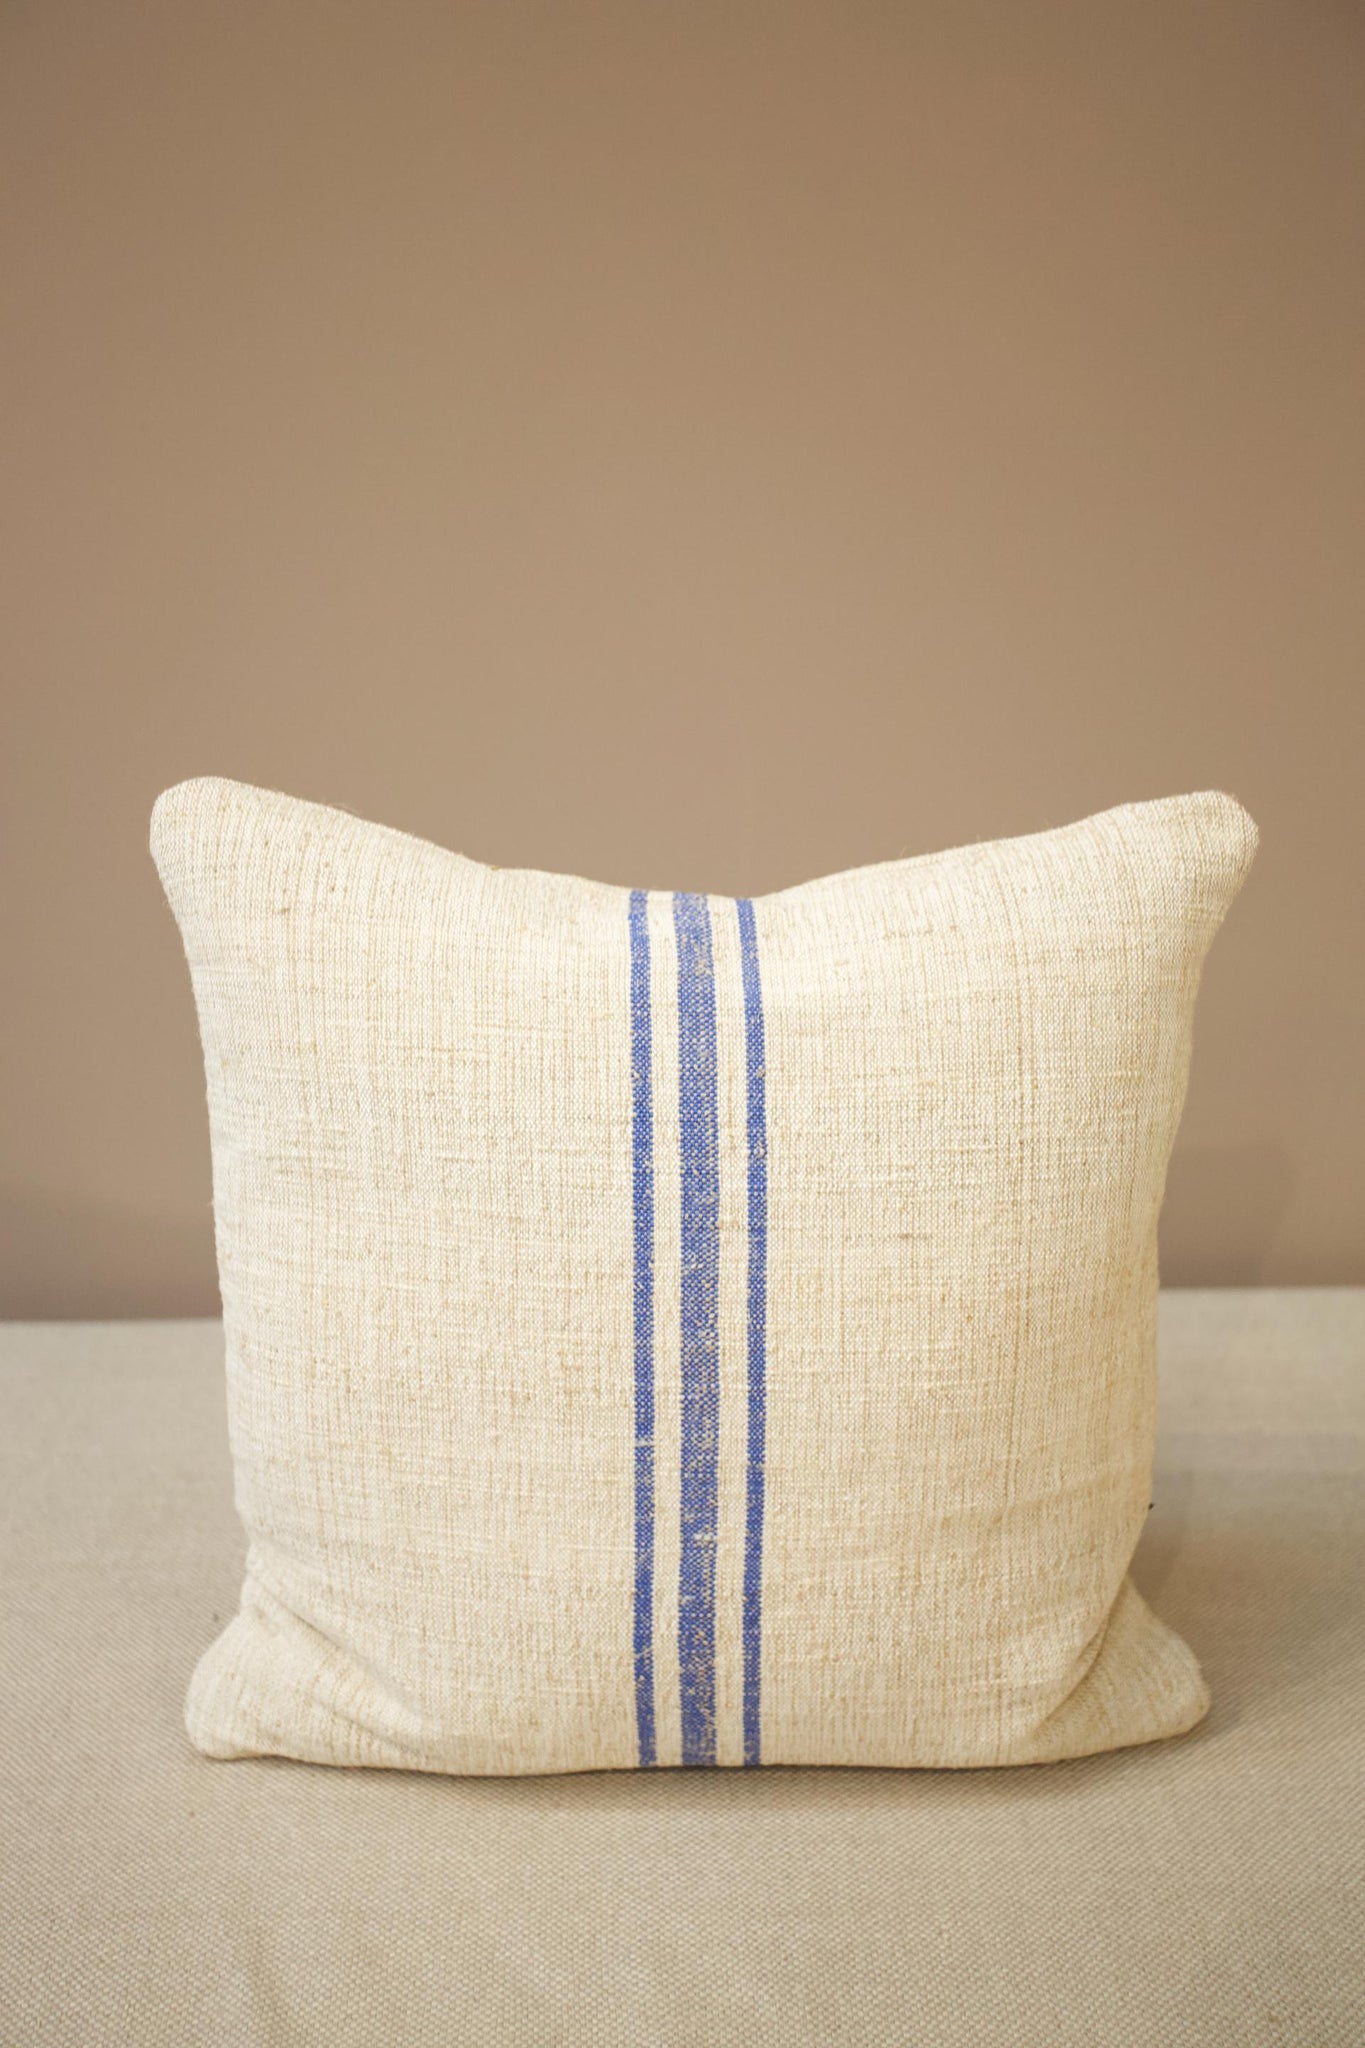 Italian linen scatter cushion - wide blue line